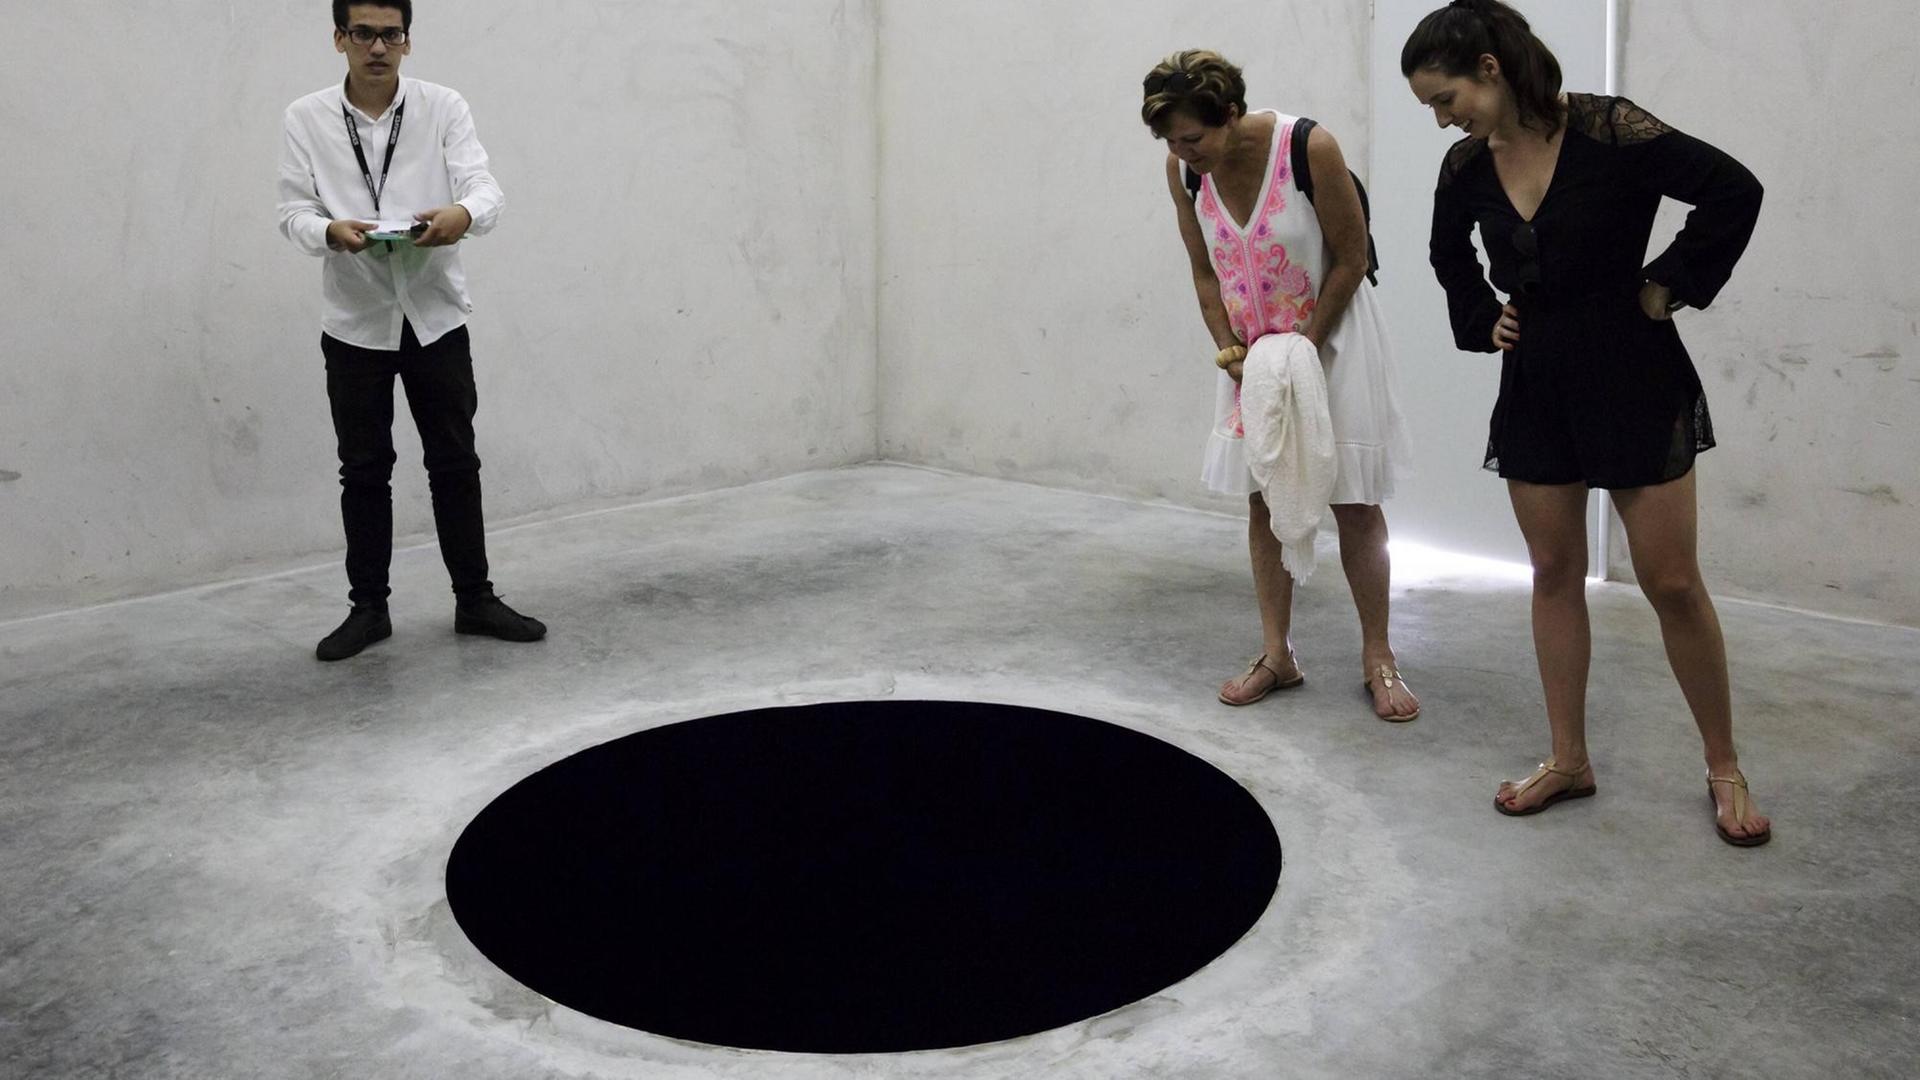 Die Installation "Descent into Limbo", Abstieg in die Unterwelt, des zeitgenössichen Künstlers Anish Kapoor im Serralves Museum in Porto, Portugal (Ausstellung Juli 2018 to Januar 2019)